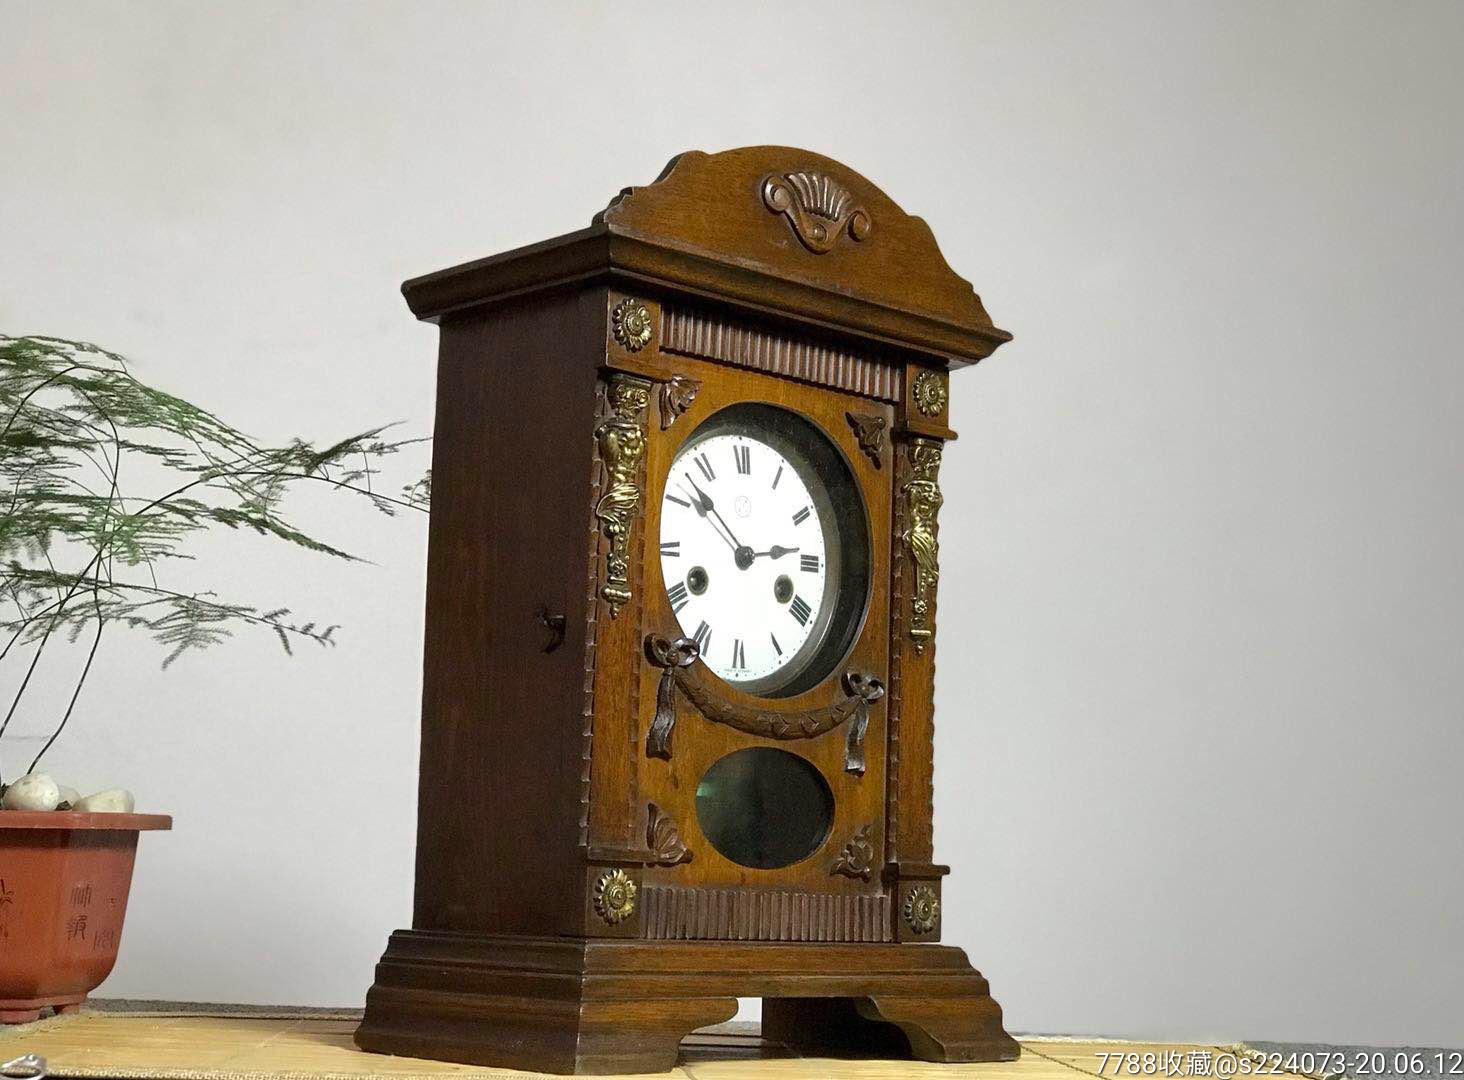 德国瓷盘老座钟19世纪『双箭』正品包老,外壳为西欧柚木,百年历史